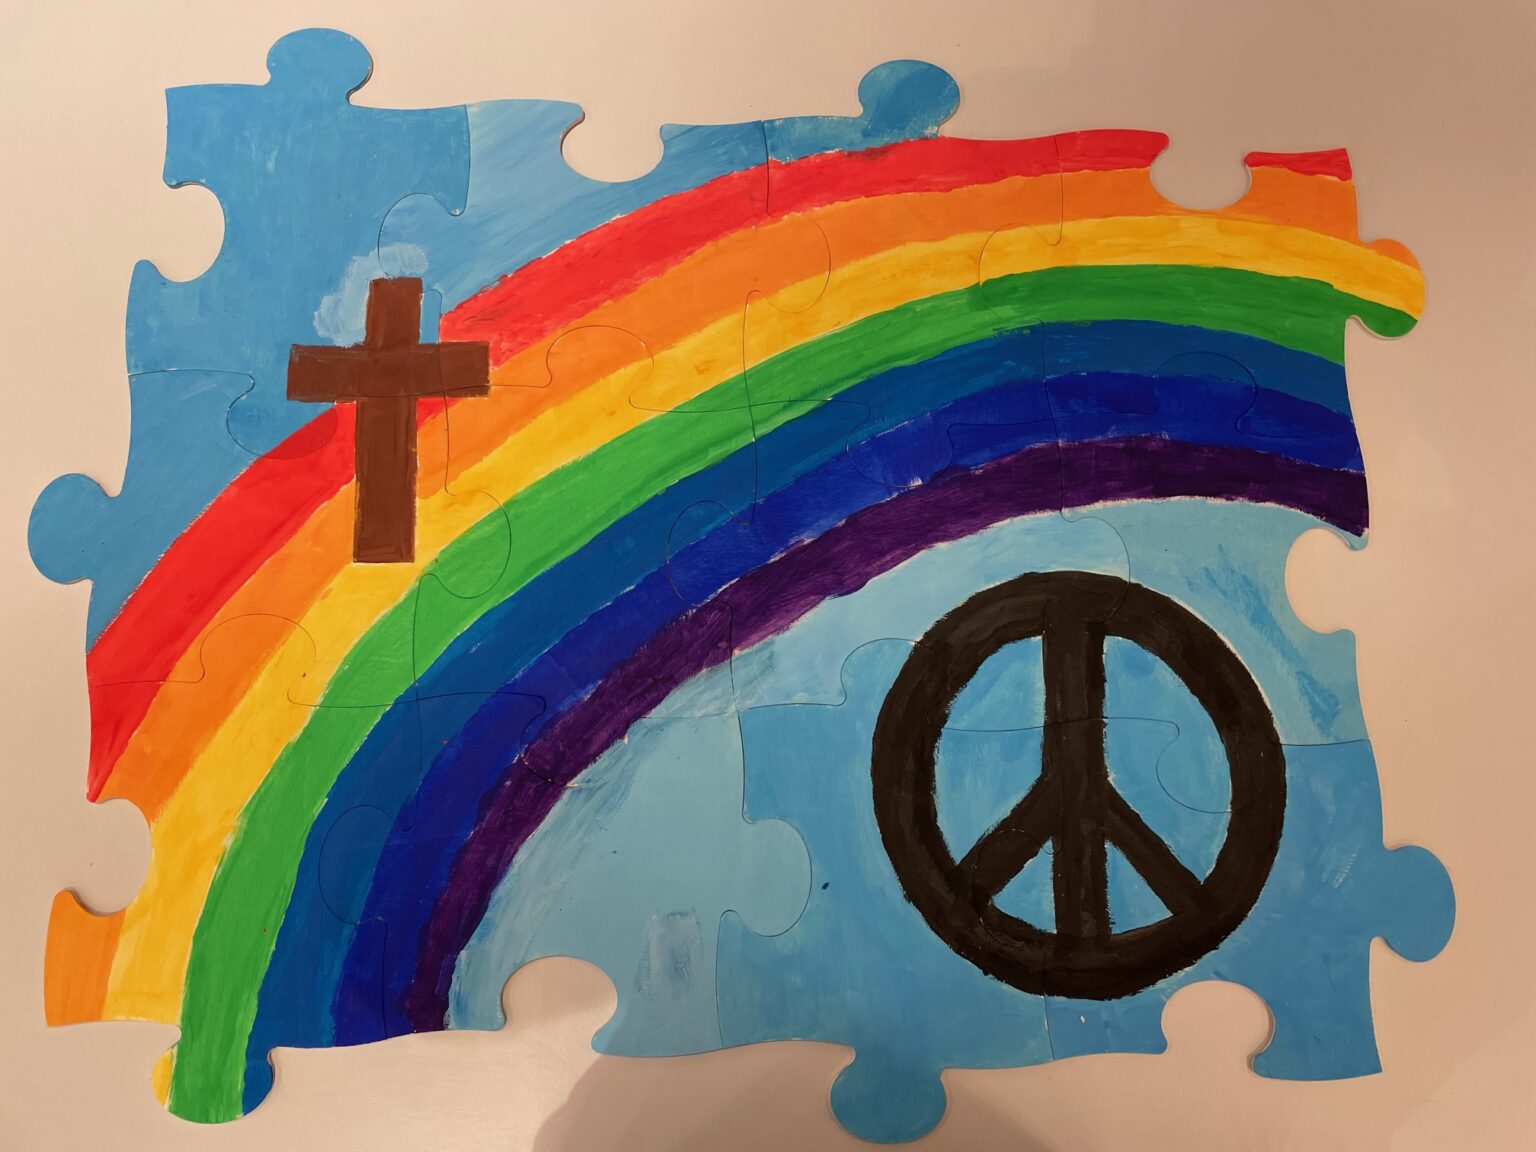 Verschiedene Puzzleteile erkennbar. Der Hintergrund ist hellblau. In der Mitte des Puzzles ein Regenbogen. Oben links ein braunes Kreuz. Unten rechts das Peace-Zeichen. Das Bild wurde von den Firmlingen der Pfarrei St. Martin gemalt.